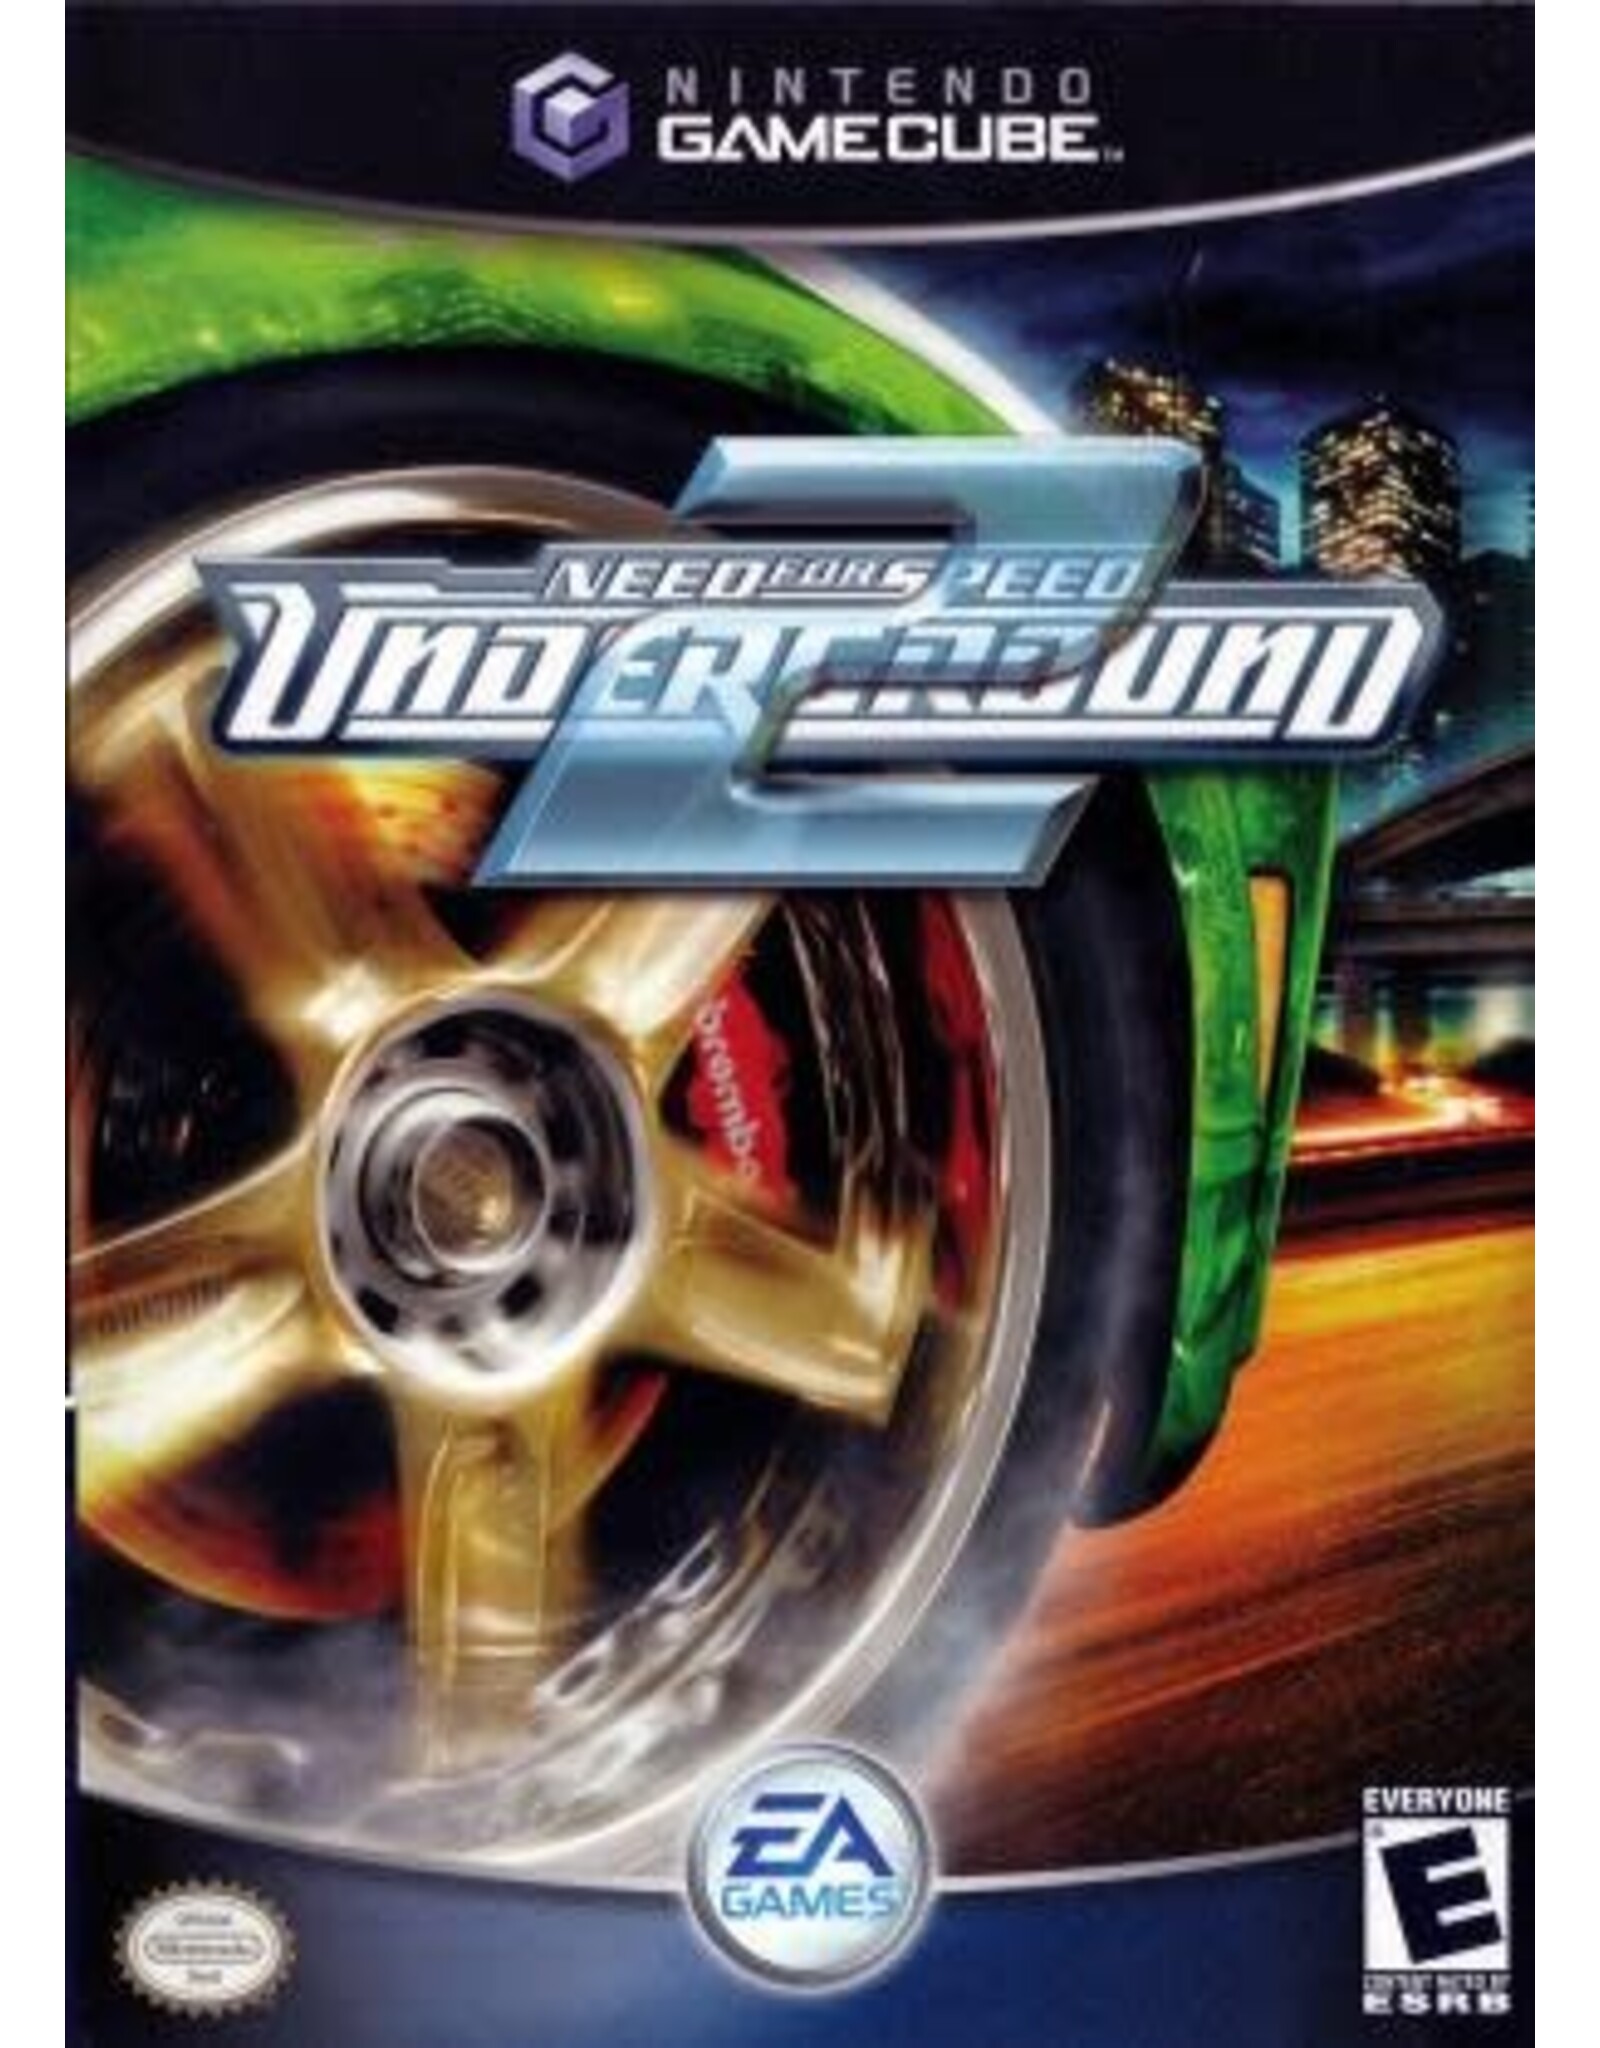 Gamecube Need for Speed Underground 2 (Used)